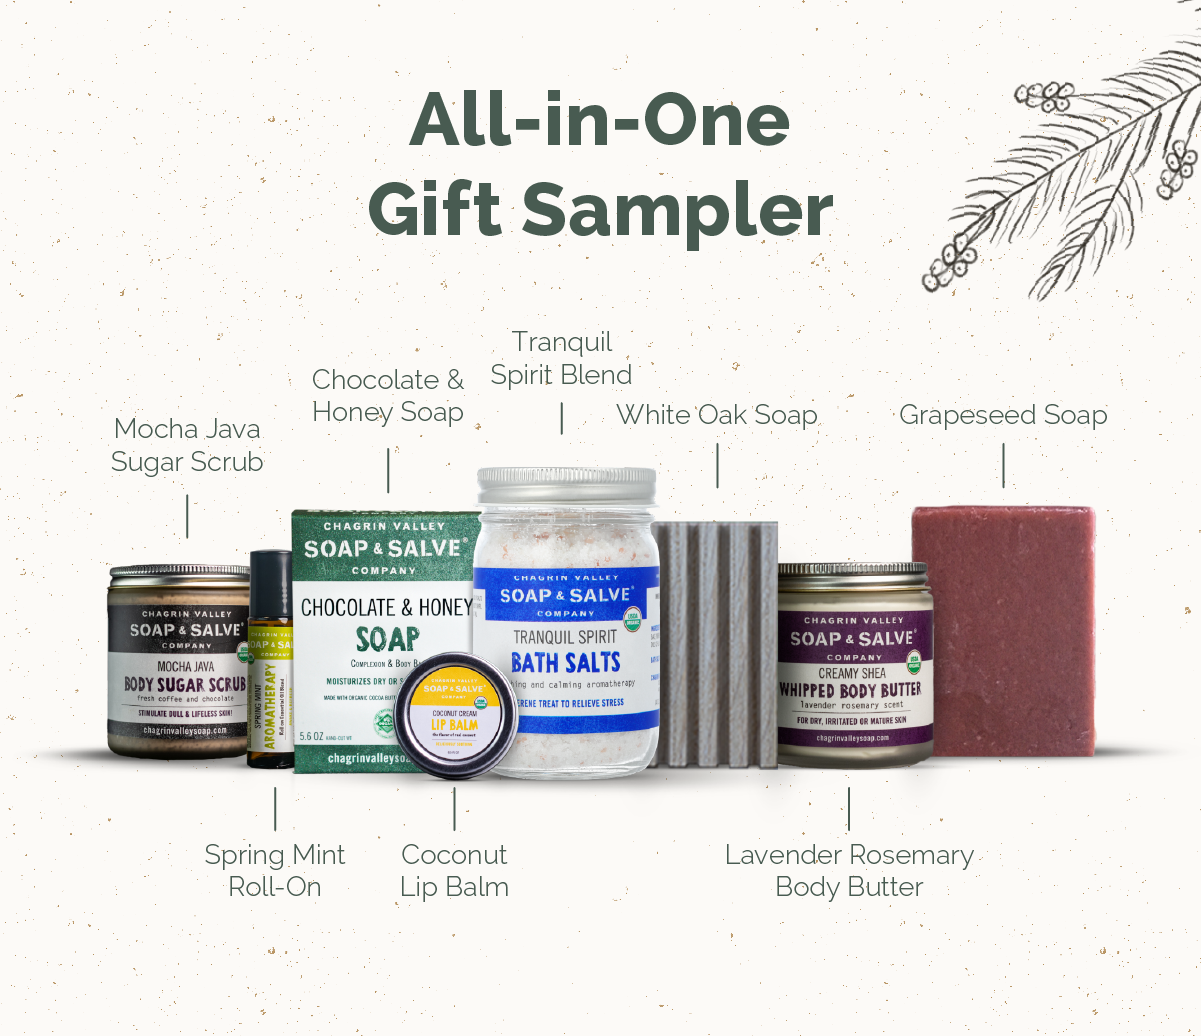 All-in-One Gift Sampler